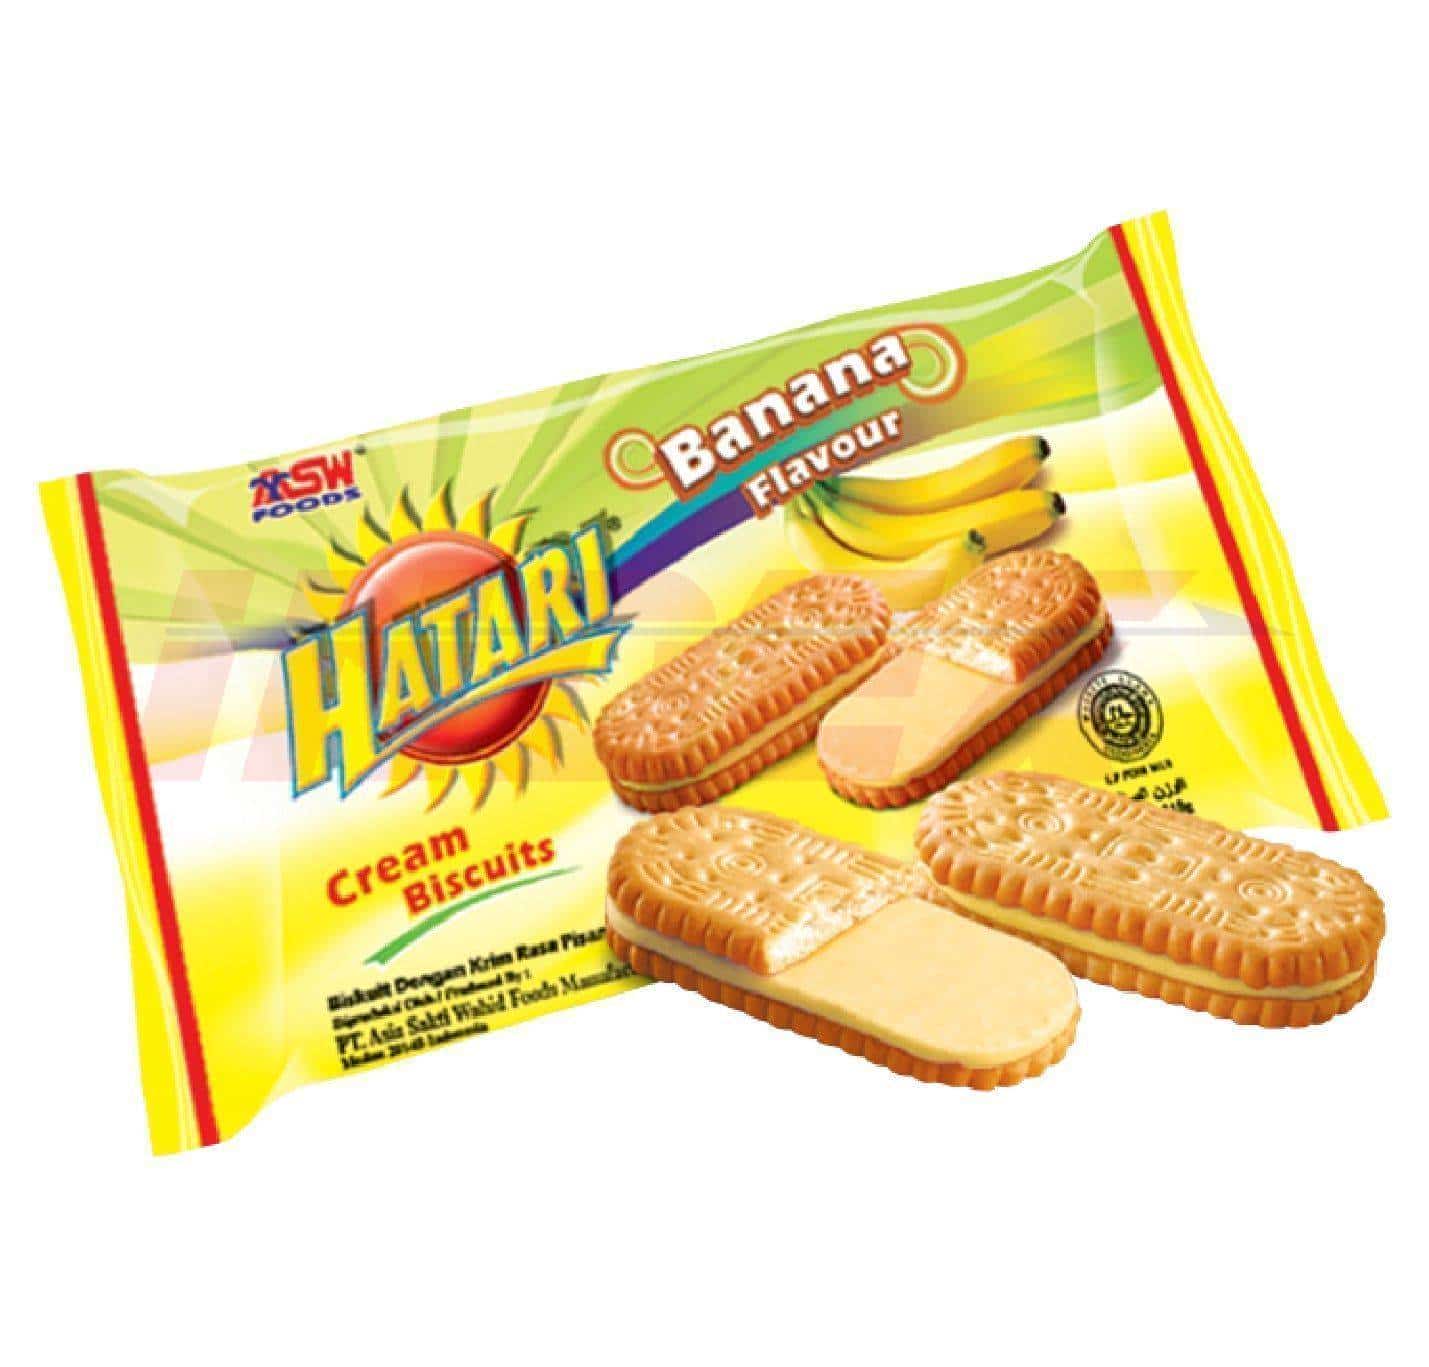 ASW HATARI Banana